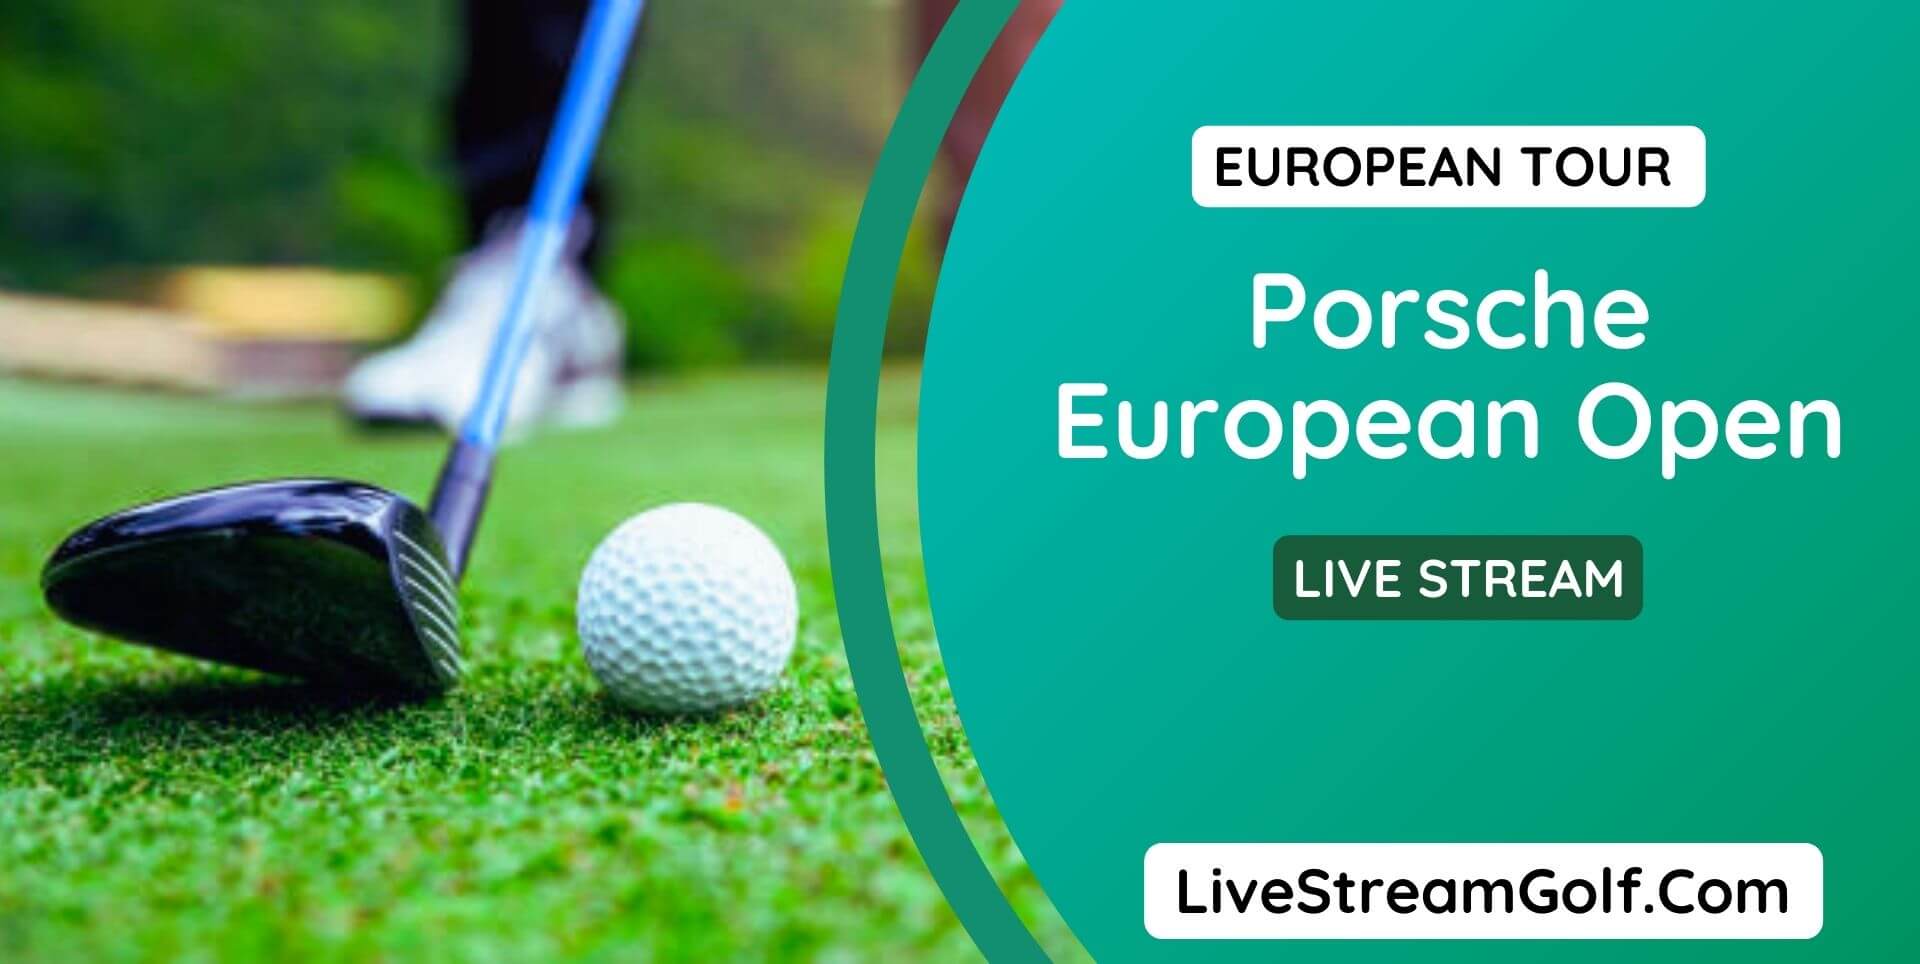 Porsche European Open Day 2 Live Stream: European Tour 2022